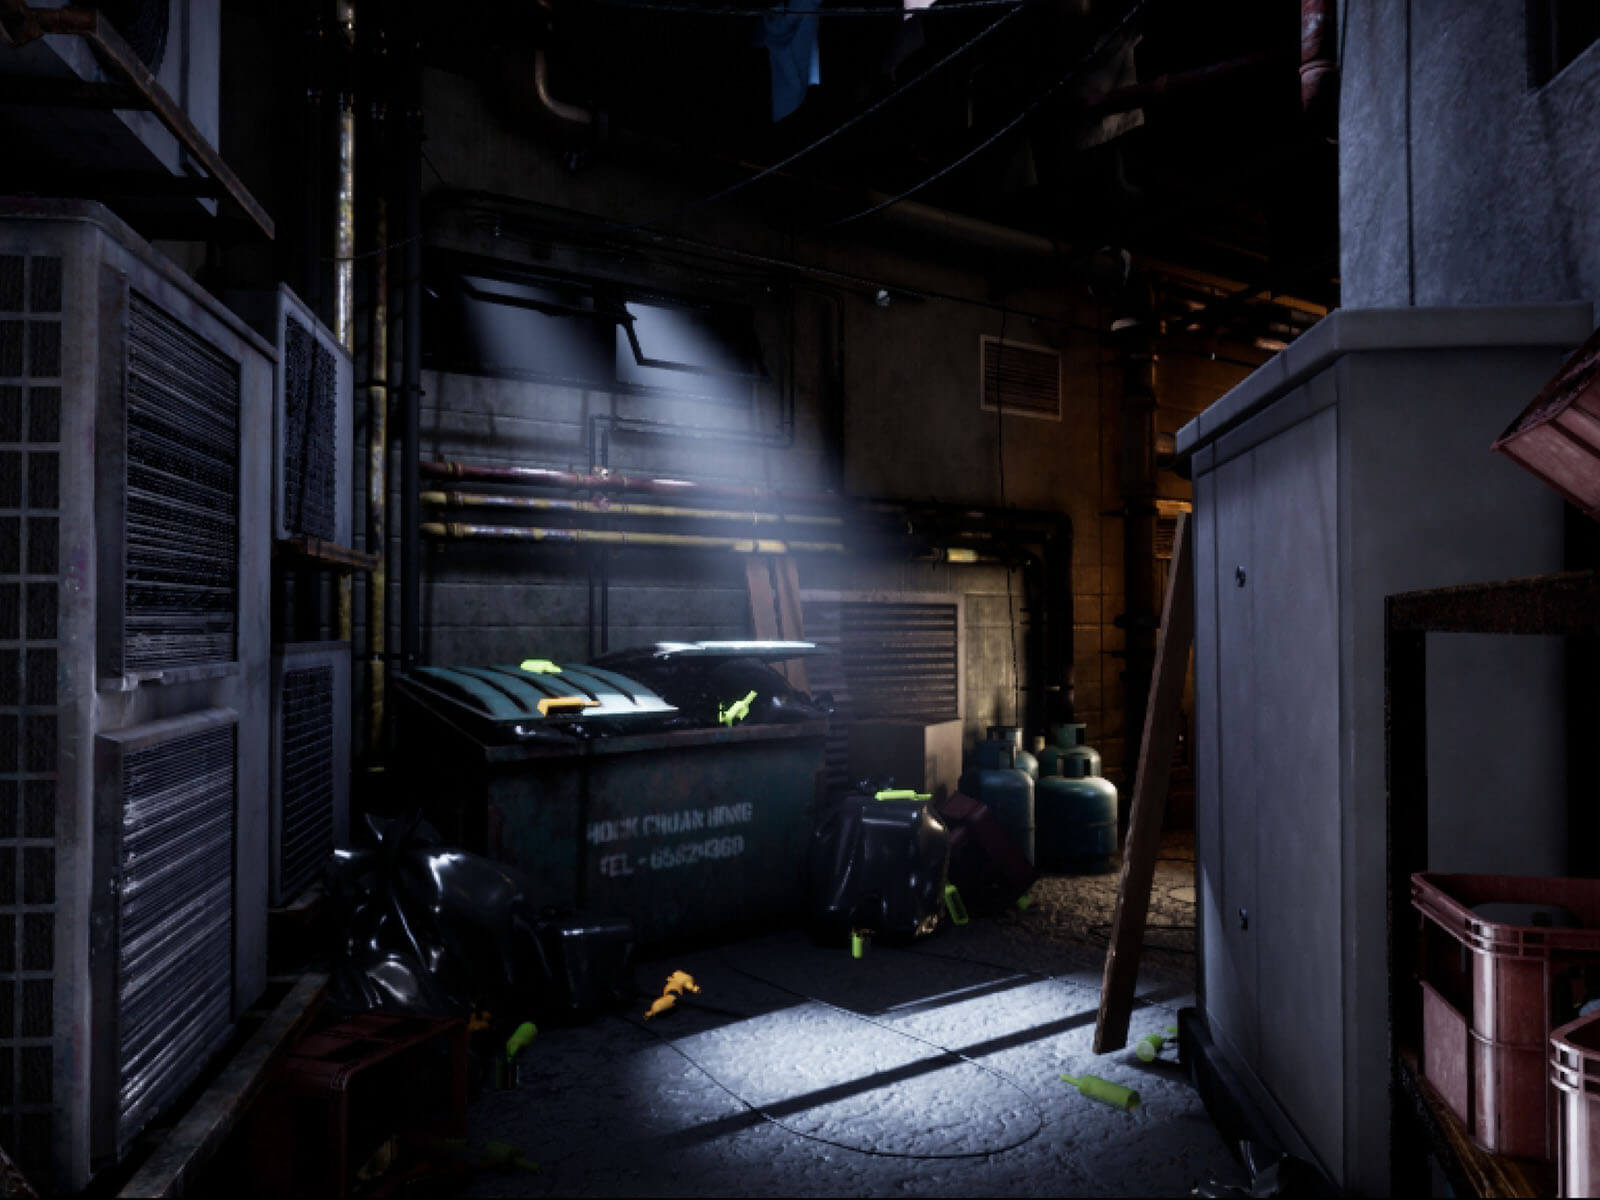 Dimly lit dumpster in an urban alleyway.